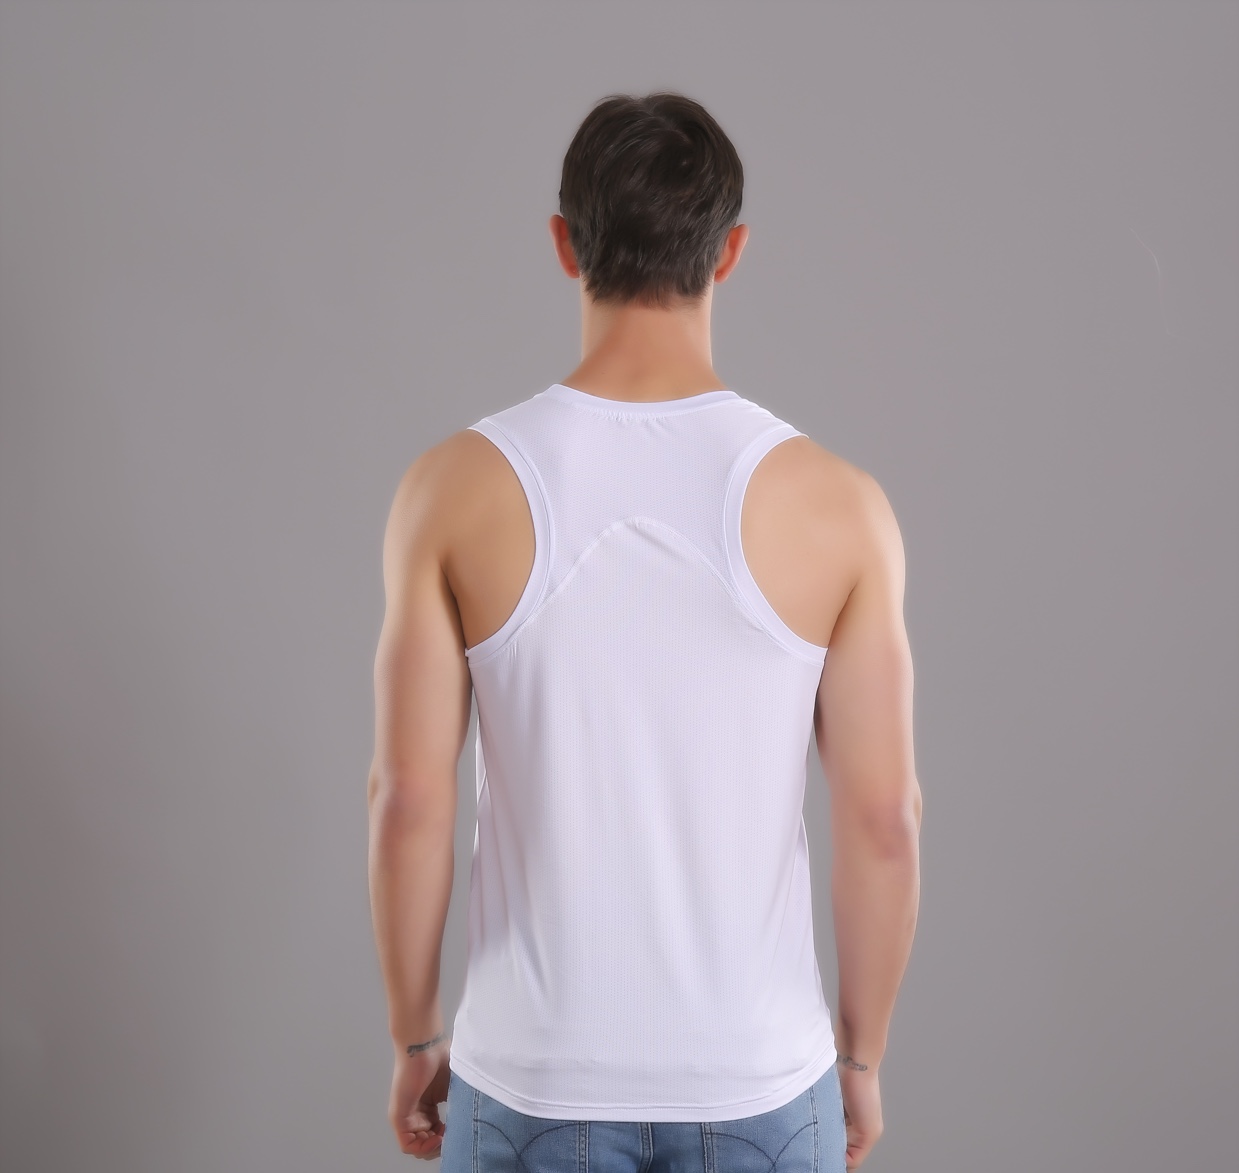 夏季新款男士速干运动背心短袖T恤跑步训练篮球贴身透气网孔健身上衣白底实物图